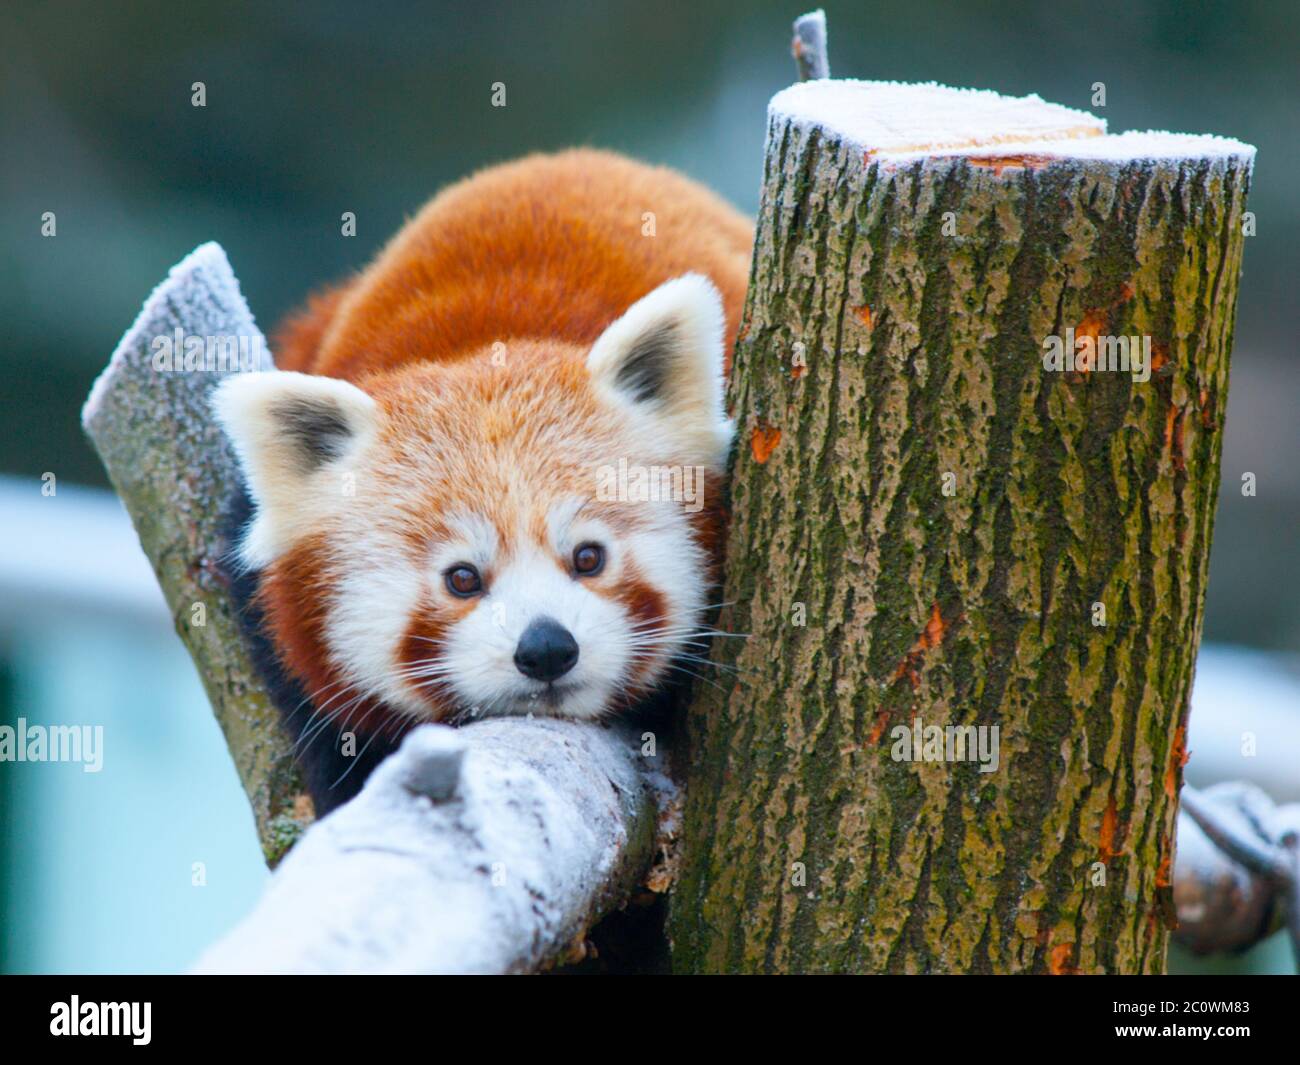 Red panda, aka lesser panda, Ailurus fulgens, lying on a branch. Stock Photo